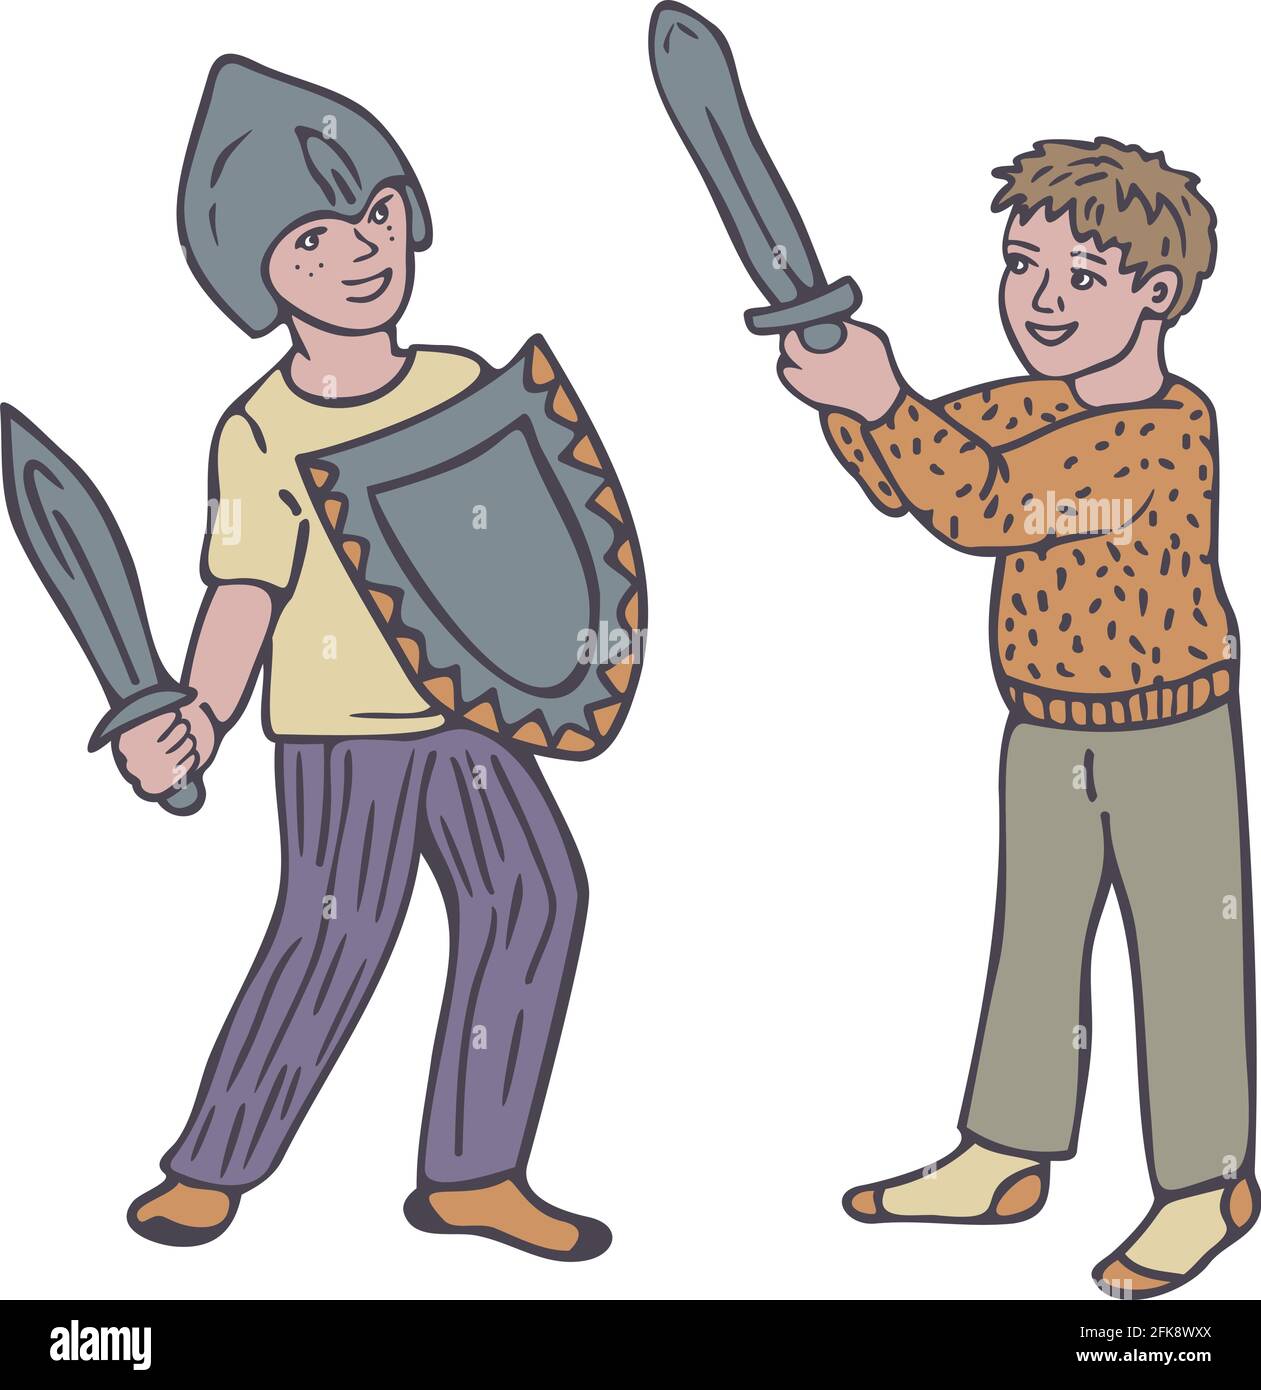 Vektor-Illustration mit Witz Kampf von zwei kleinen Jungen. Zwei Jungen in Spielzeugrüstung. Stock Vektor